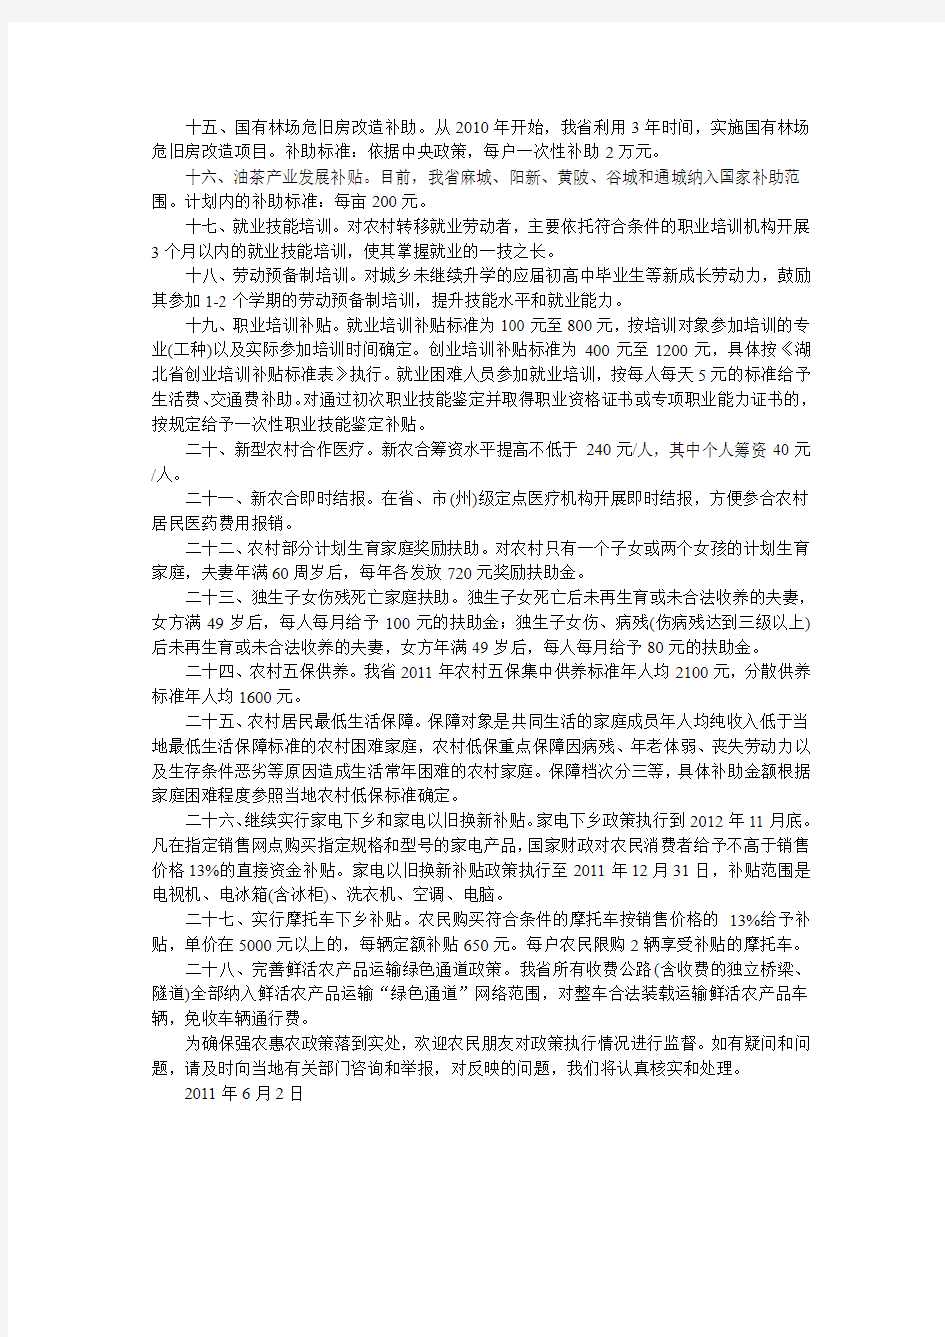 中共湖北省委湖北省人民政府有关惠农政策致全省农民朋友的一封信